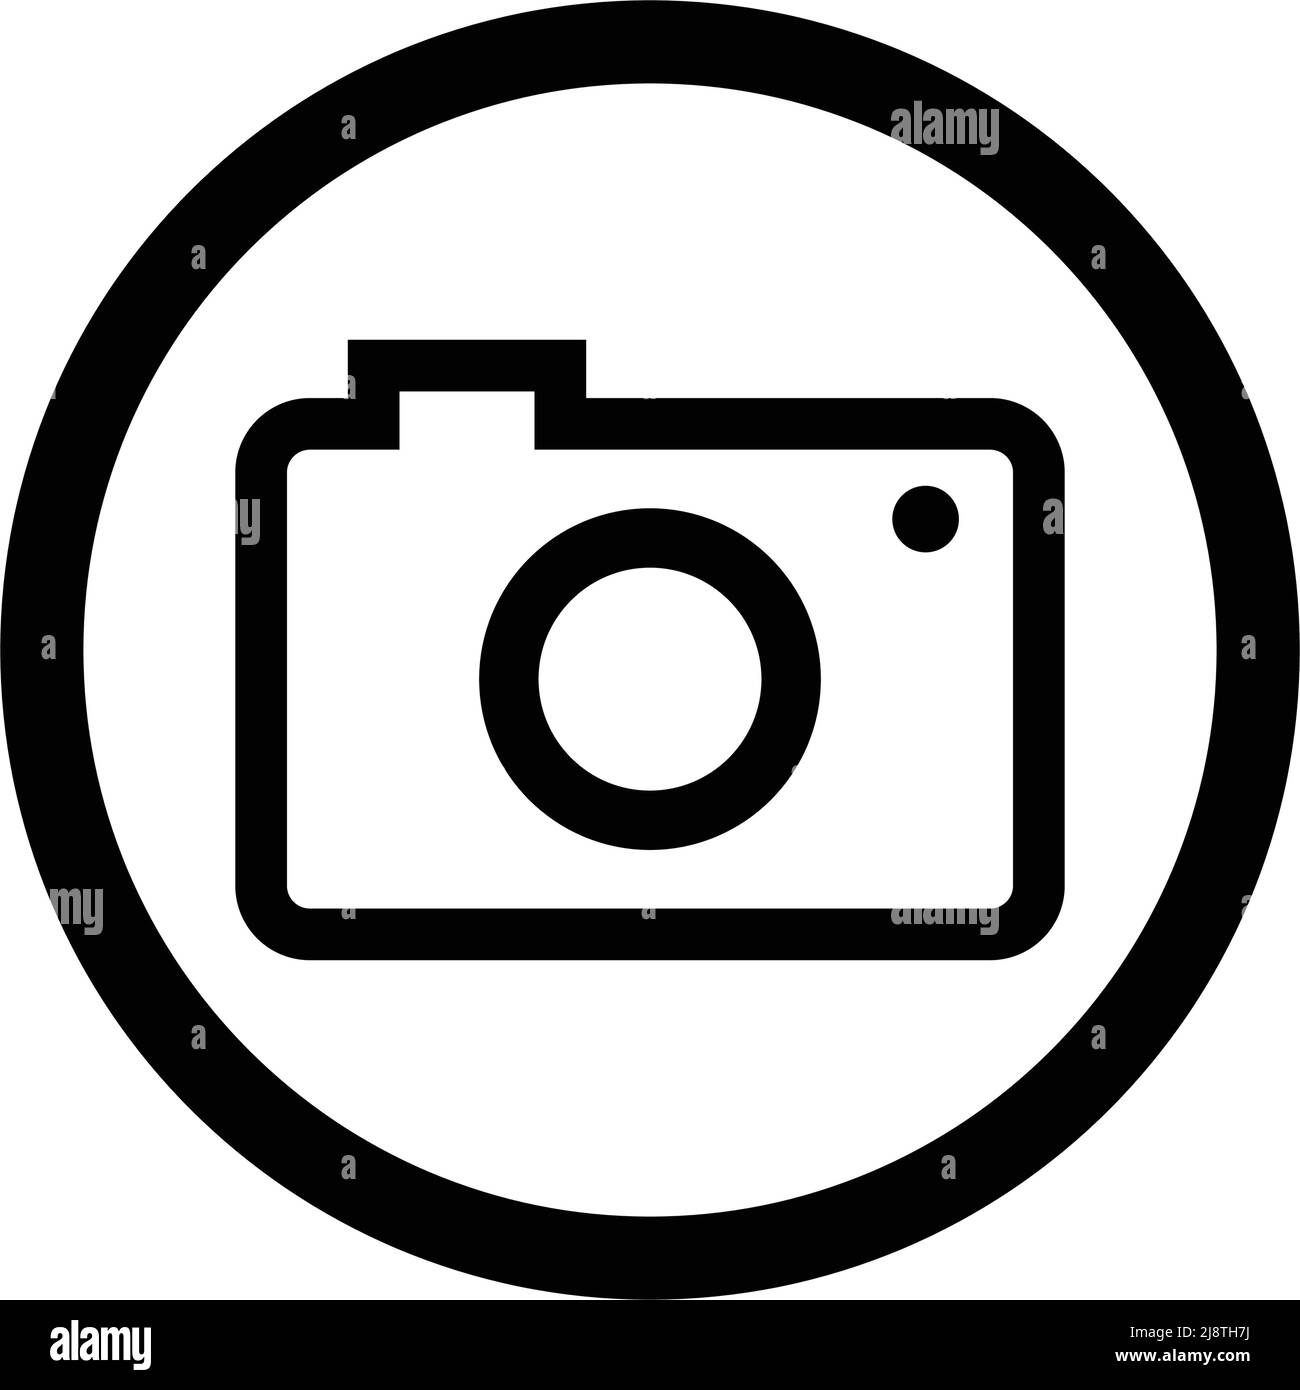 Camera icon in a round circle. Editable vector. Stock Vector